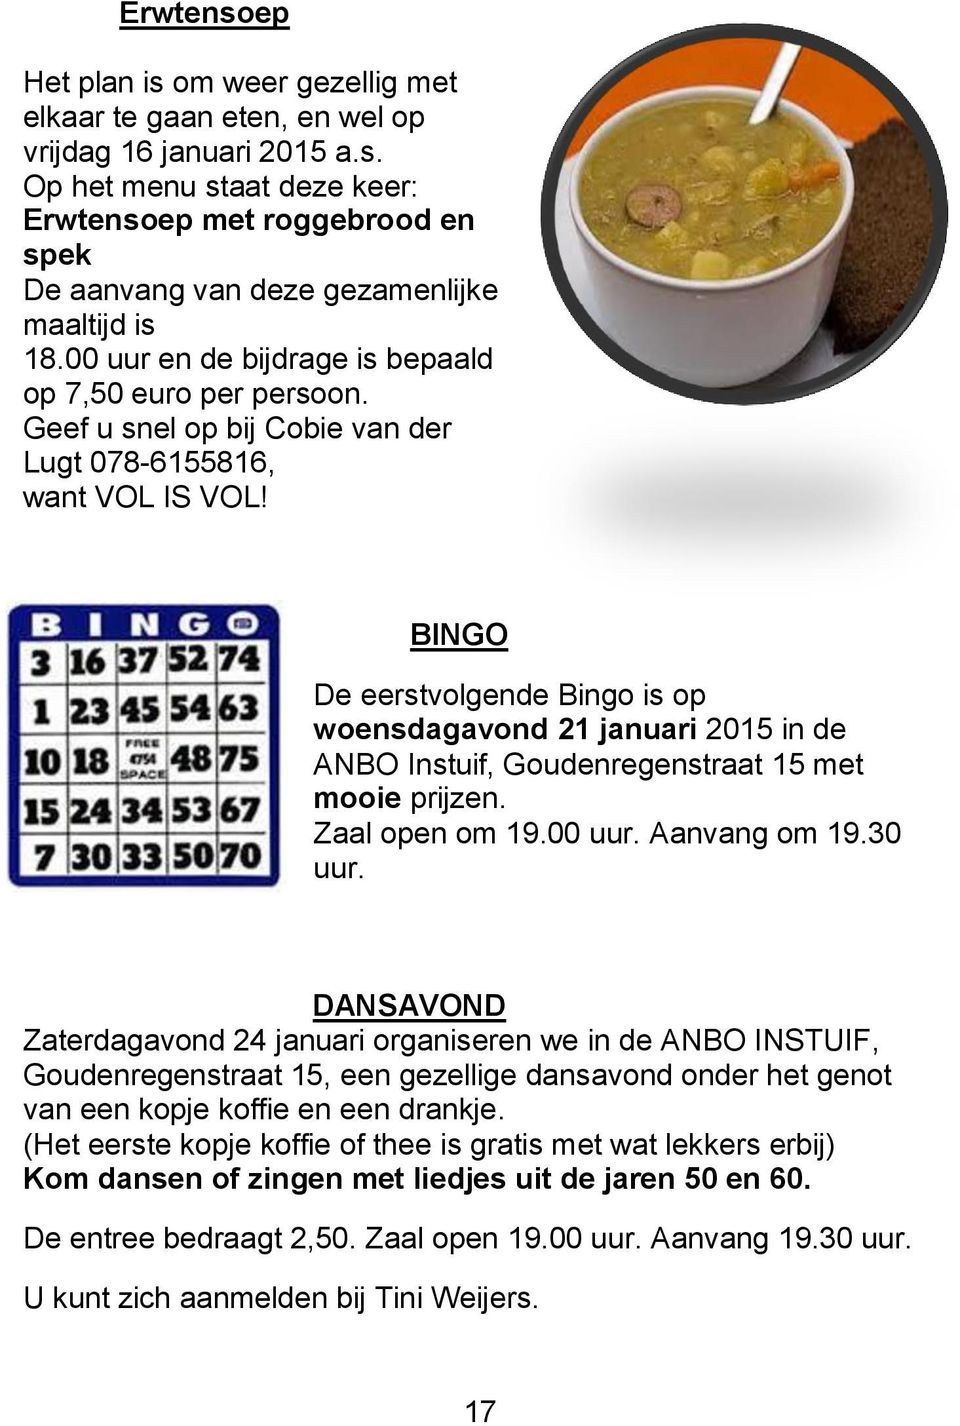 BINGO De eerstvolgende Bingo is op woensdagavond 21 januari 2015 in de ANBO Instuif, Goudenregenstraat 15 met mooie prijzen. Zaal open om 19.00 uur. Aanvang om 19.30 uur.